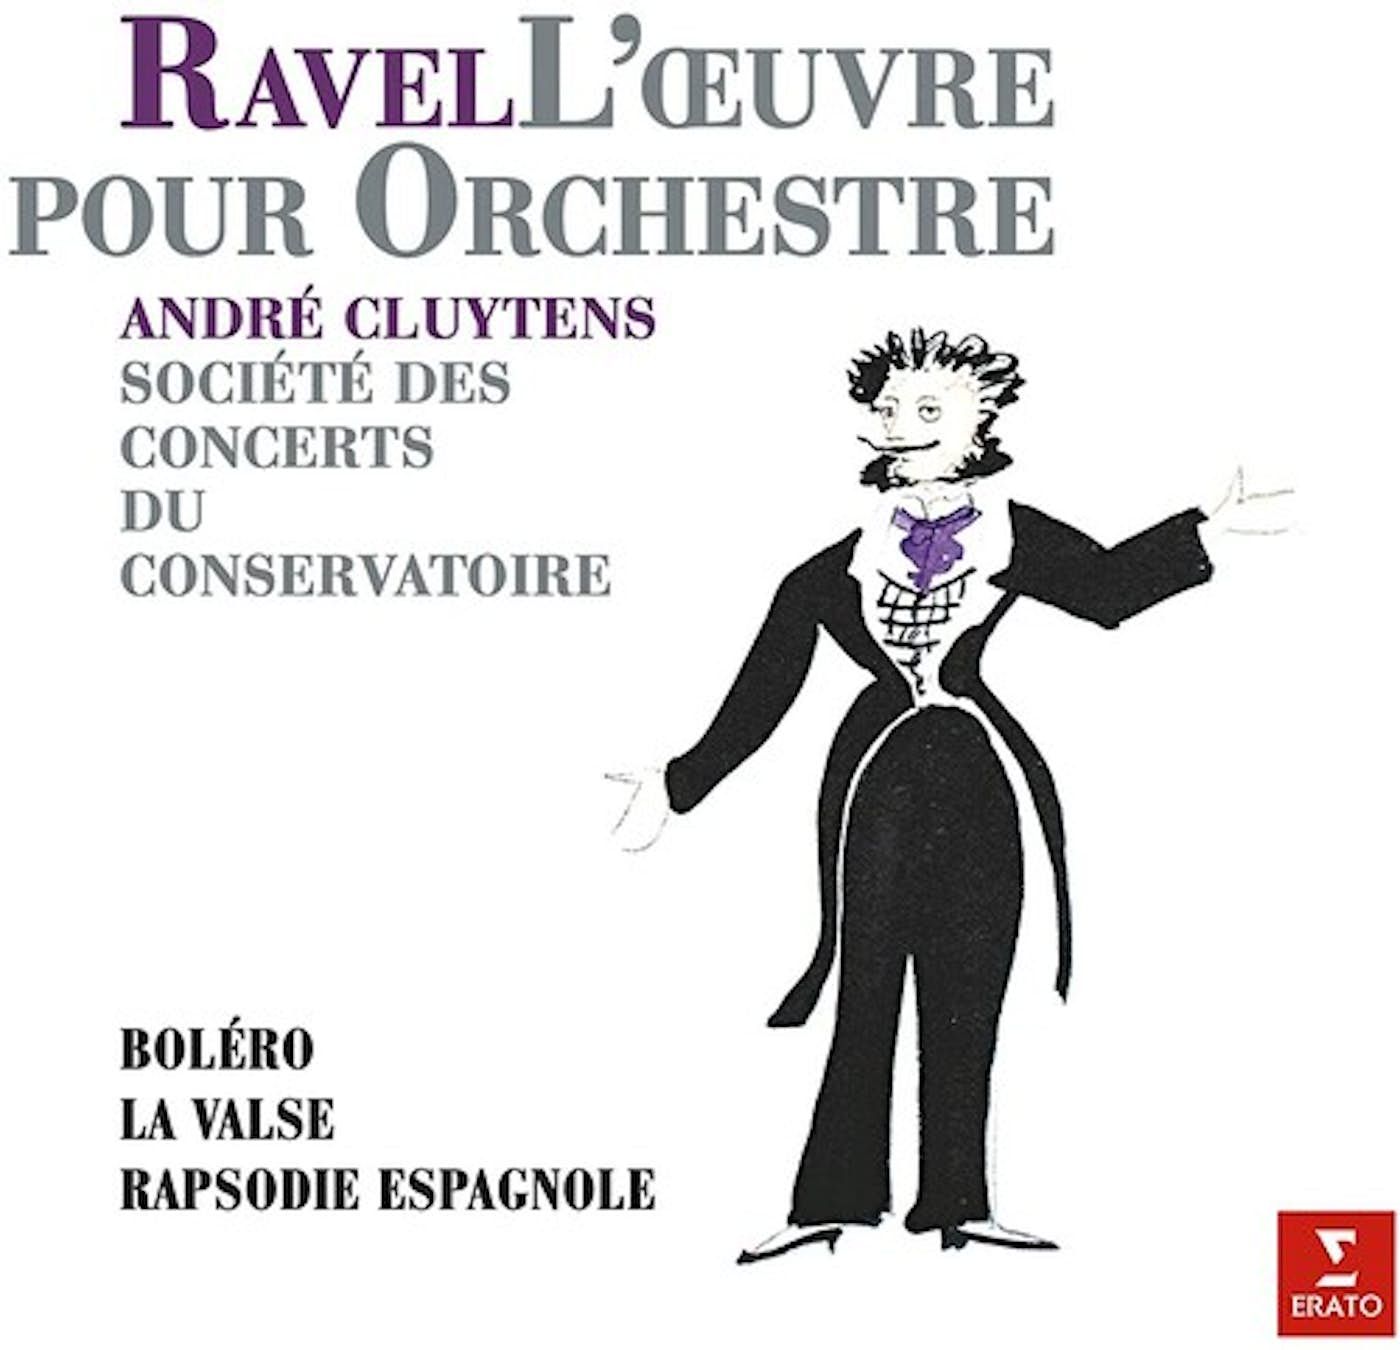 Виниловая пластинка Andre Cluytens, Ravel: Bolero, Rapsodie Espagnol (0190295459819) ravel bolero alborada del gracioso daphnis